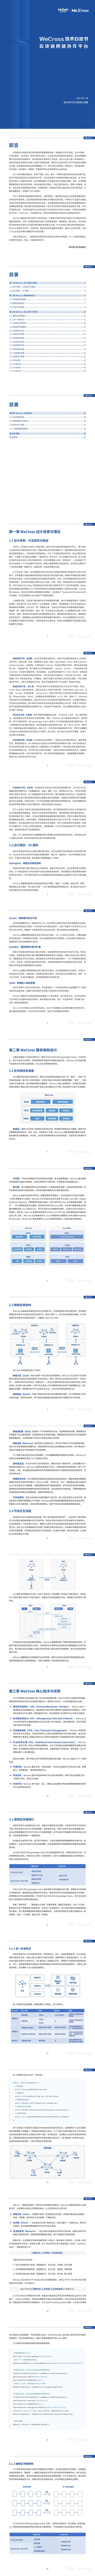 【微众银行】WeCross技术白皮书：区块链跨链协作平台_0.jpg